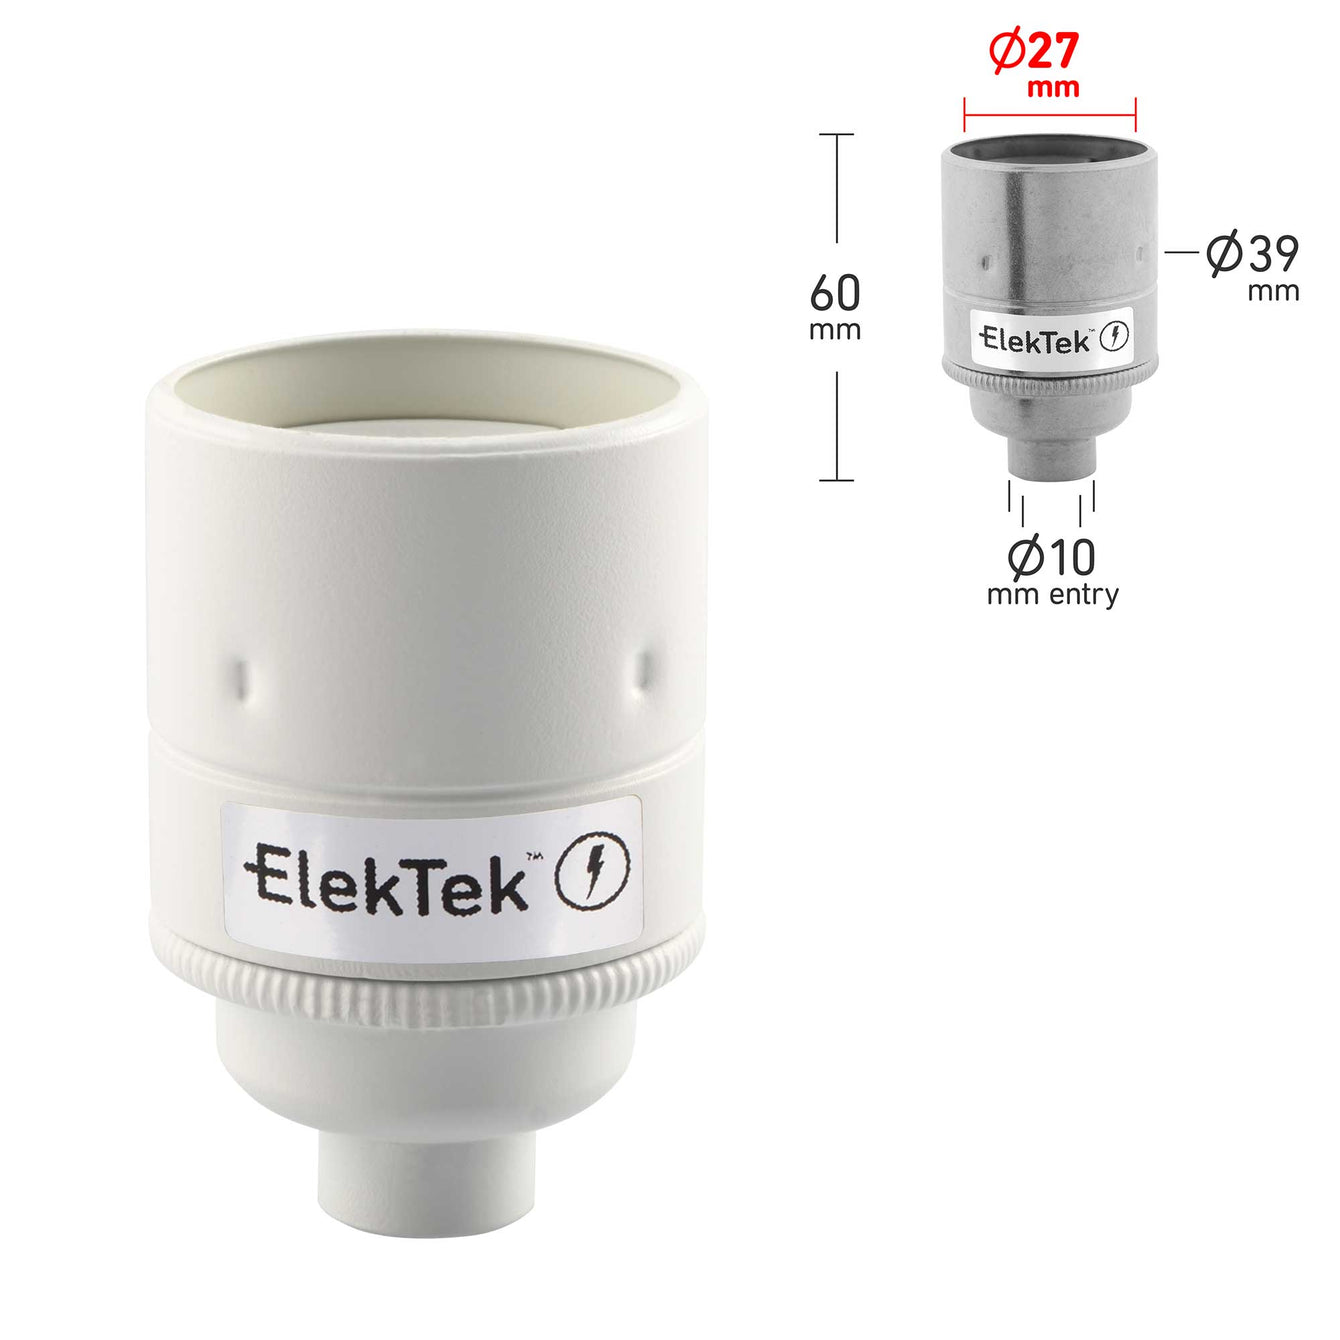 ElekTek ES Edison Screw E27 Lamp Holder Plain Skirt 10mm or Half Inch Entry Ideal for Vintage Filament Bulbs Brass - Buy It Better Brilliant White / 10mm